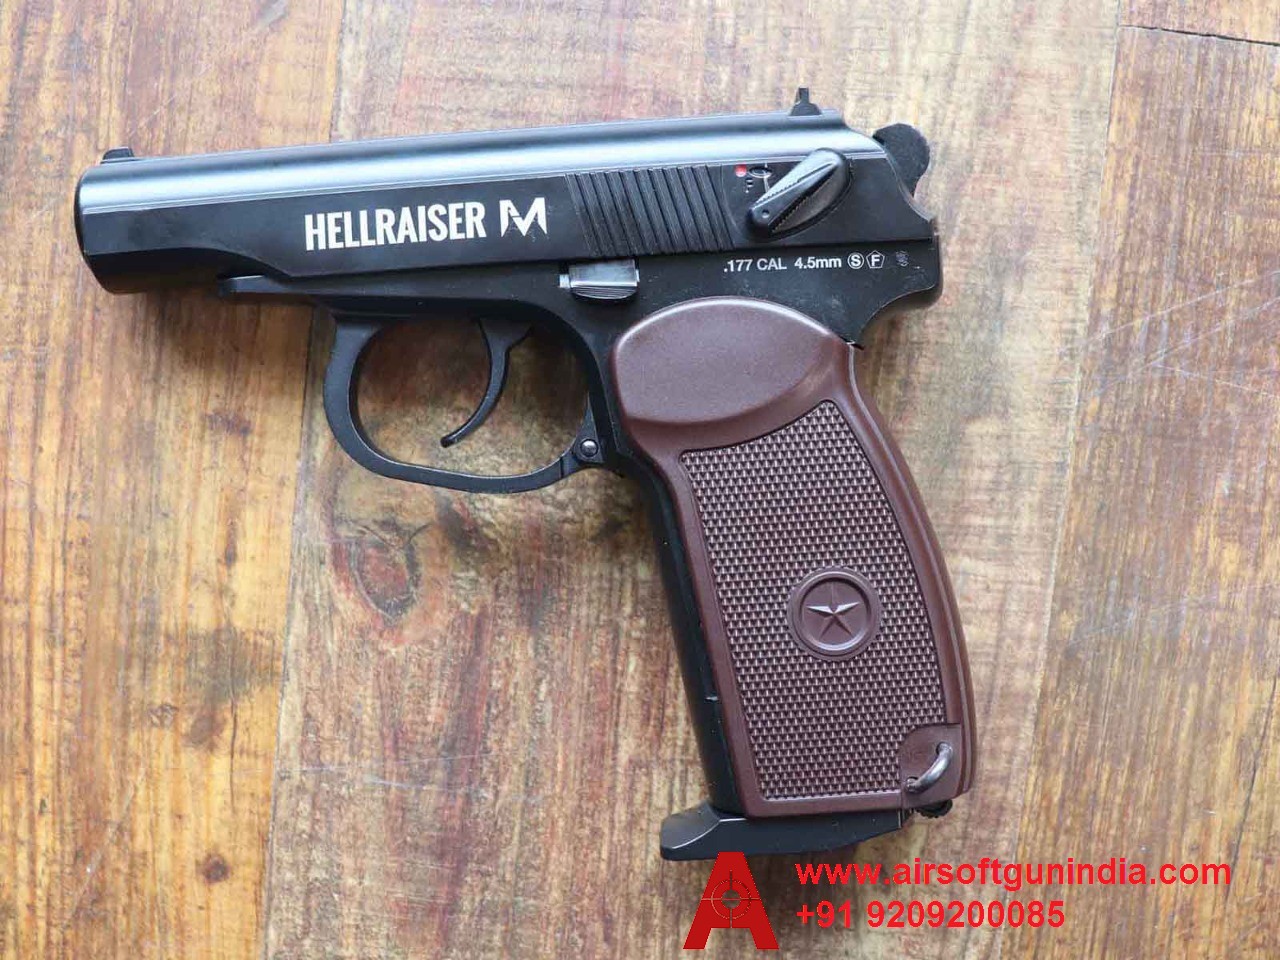 Hellraiser M CO2 BB .177Cal, 4.5mm Air Pistol By Airsoft Gun India